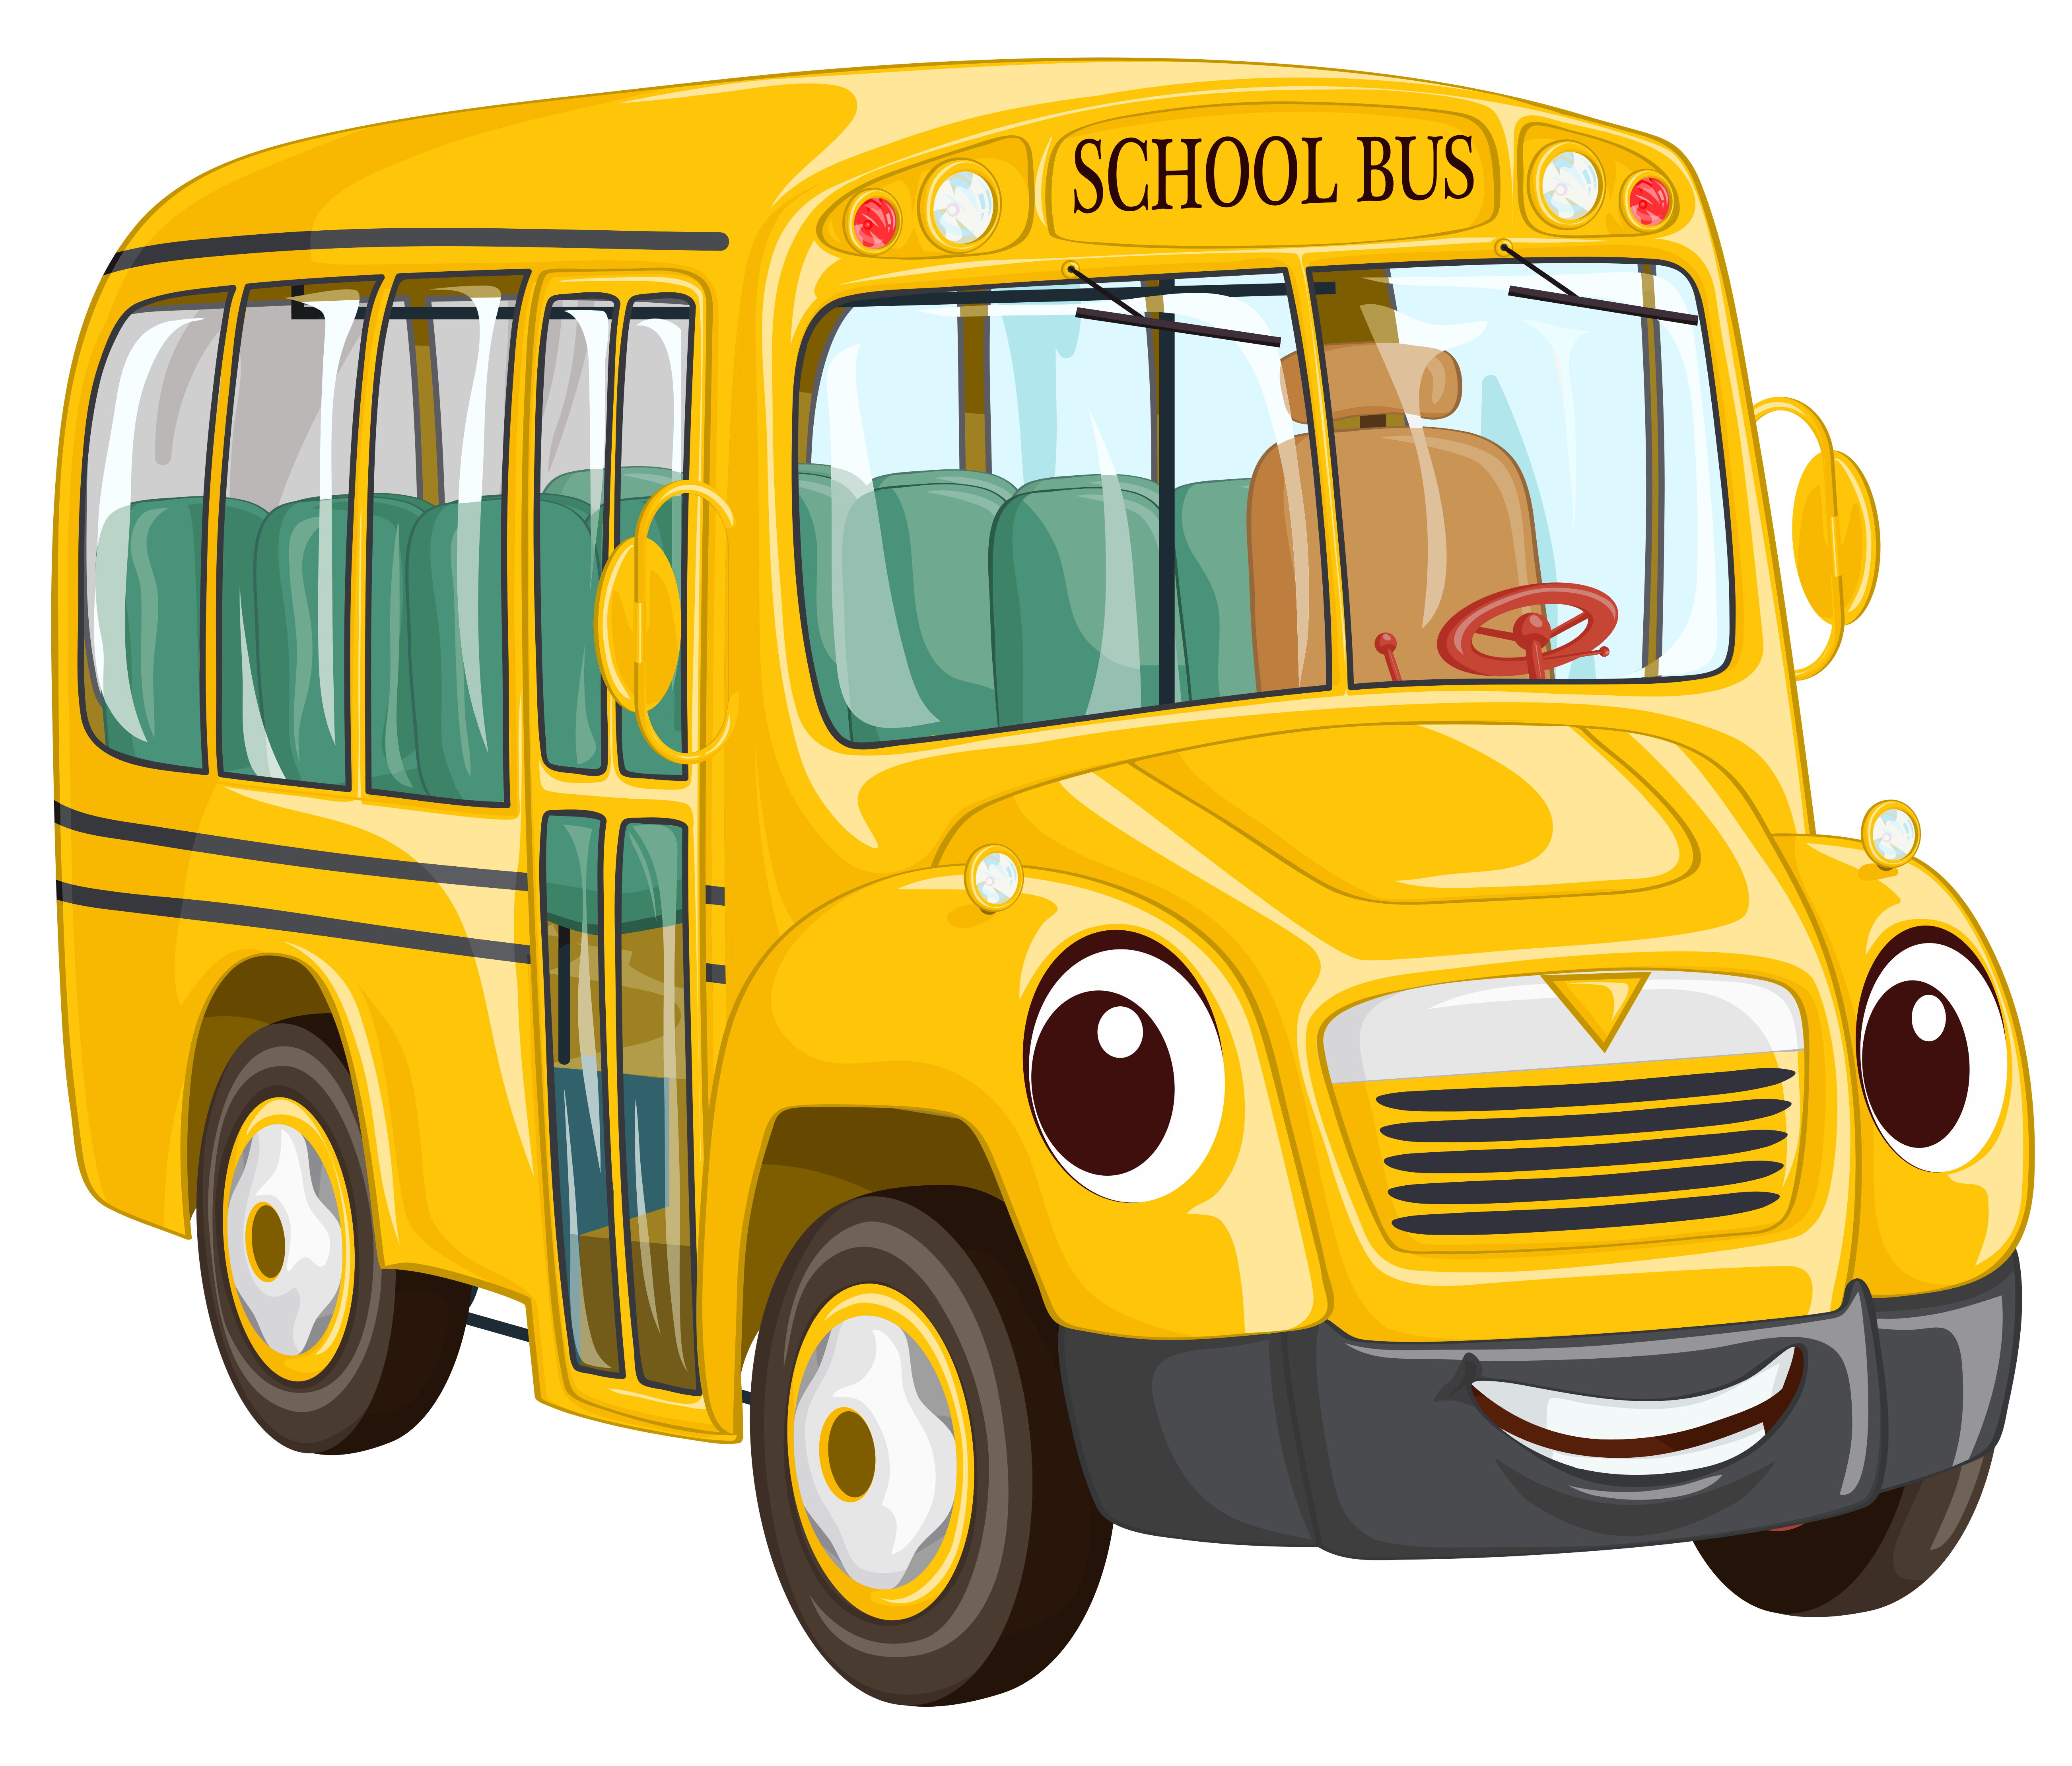 School bus clipart images 3 s - Schoolbus Clipart